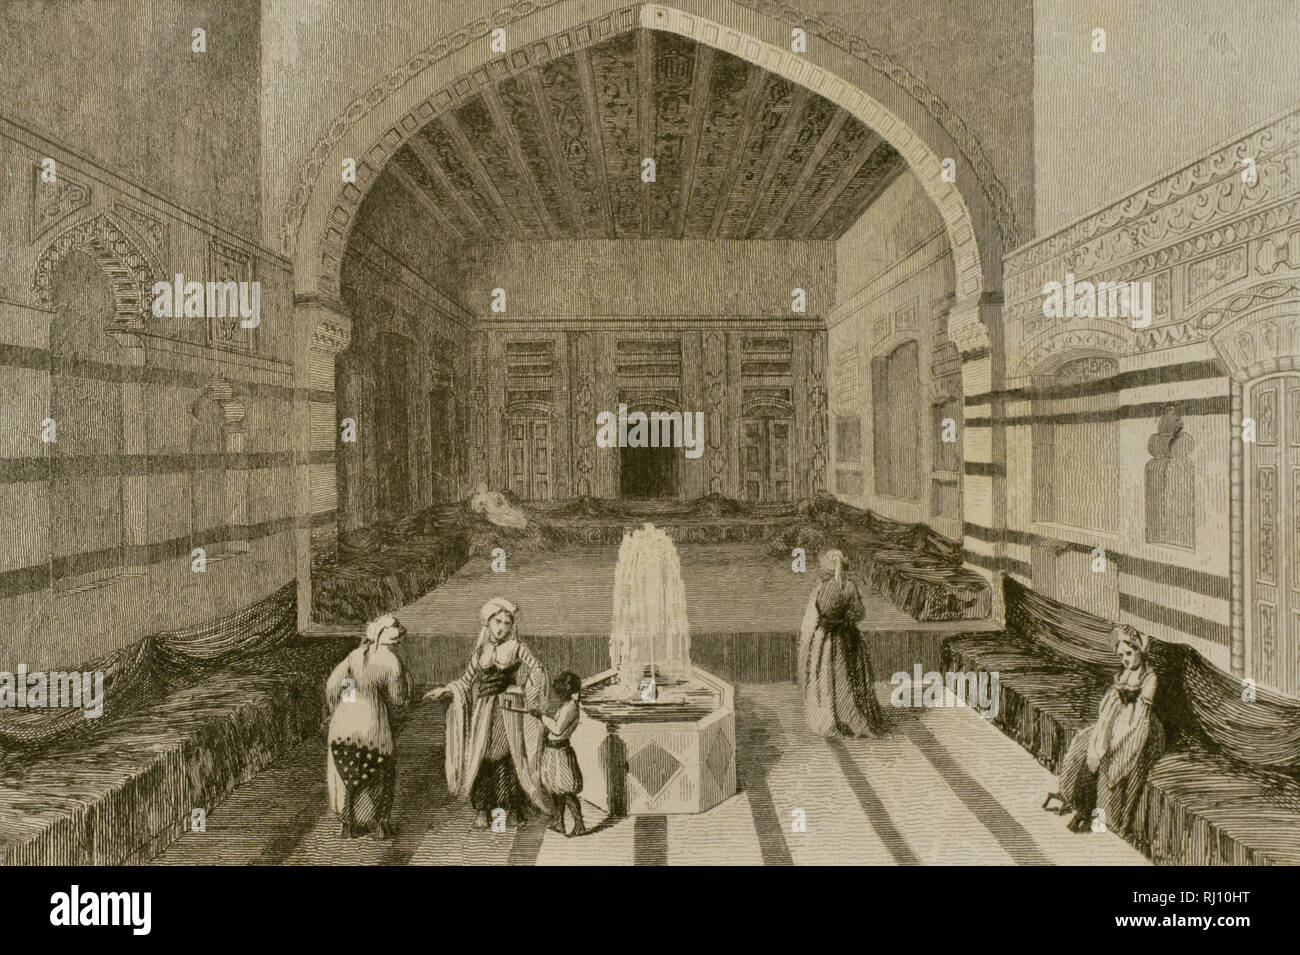 Syrien. Damaskus. Innenraum eines Palastes. Gravur. Panorama Universal. Geschichte von Arabien, 1851. Stockfoto